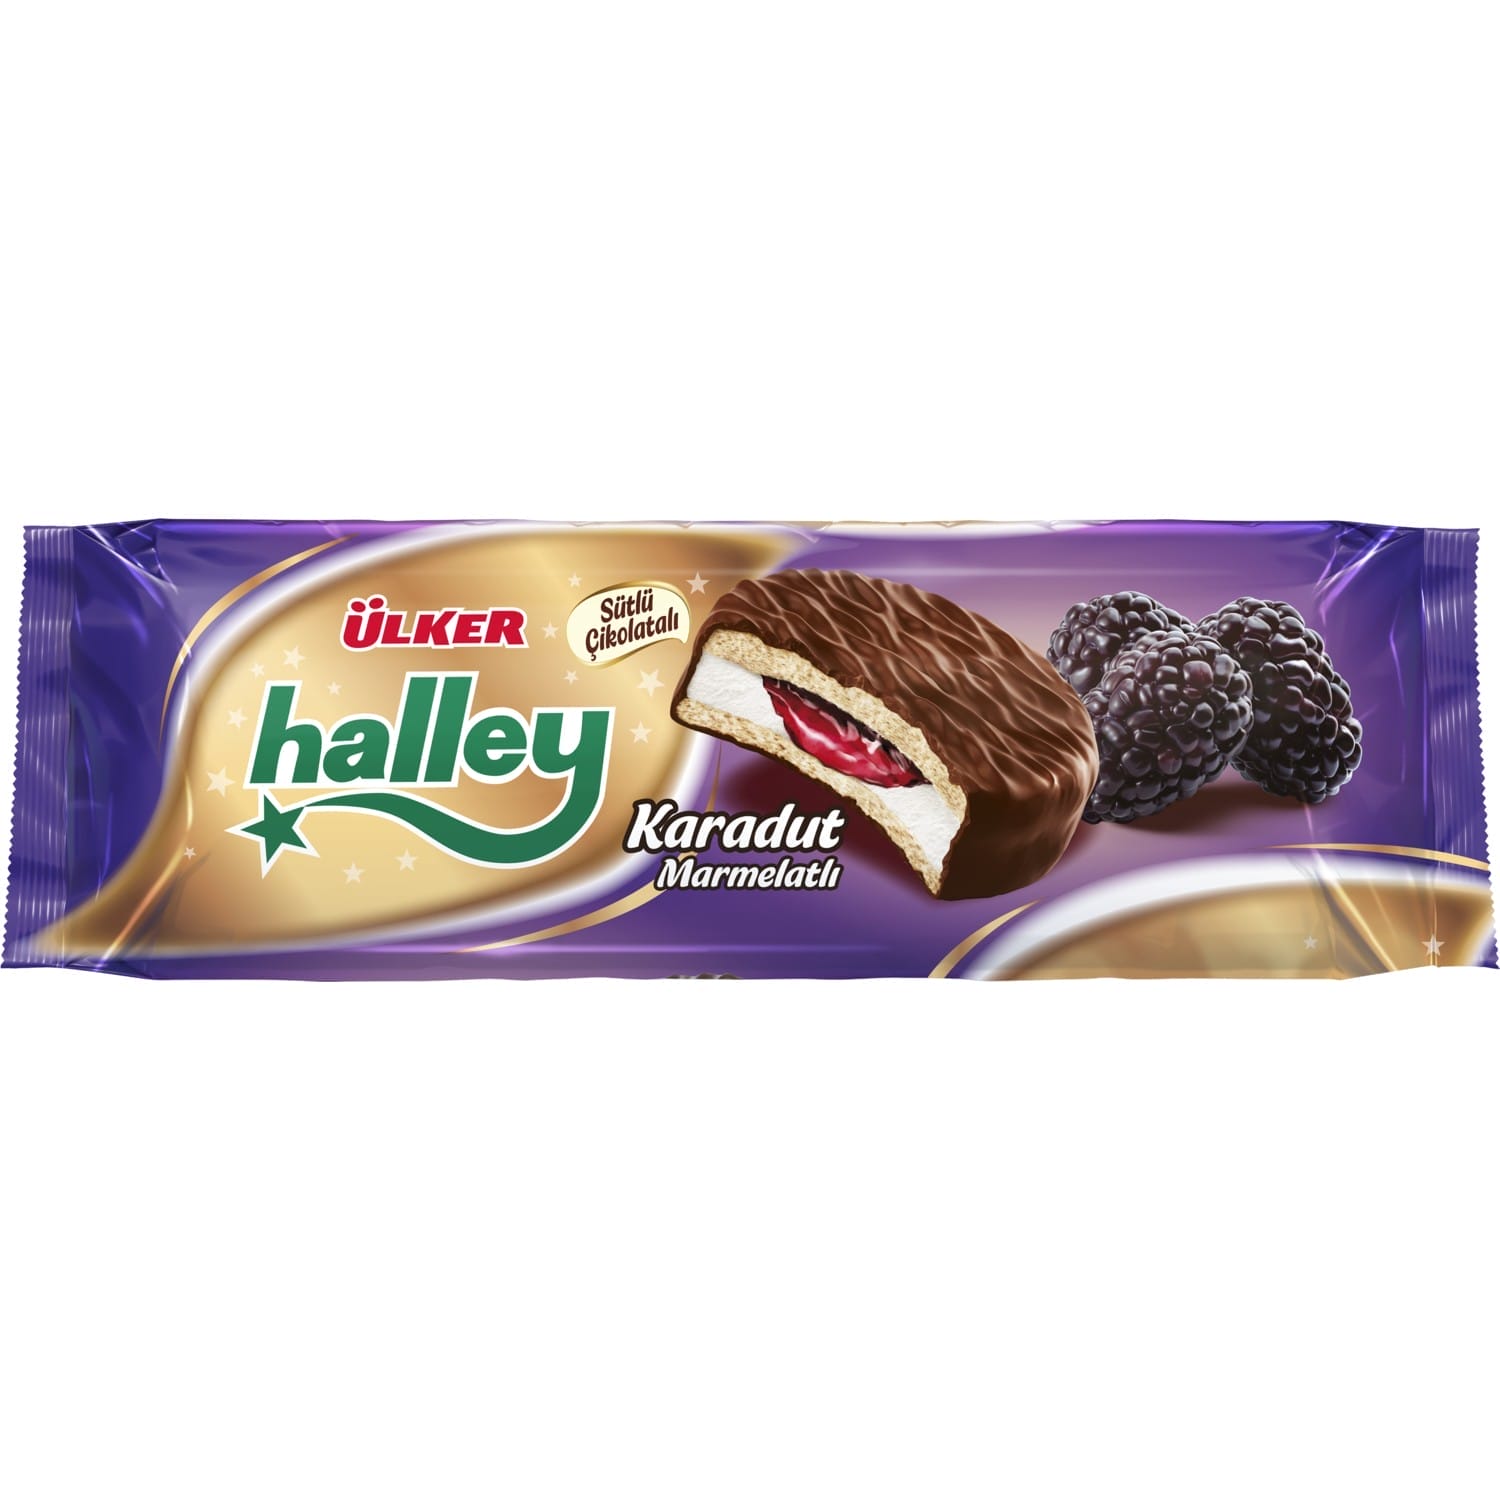 Ülker Halley Karadut Marmelatlı Bisküvi 236 Gr